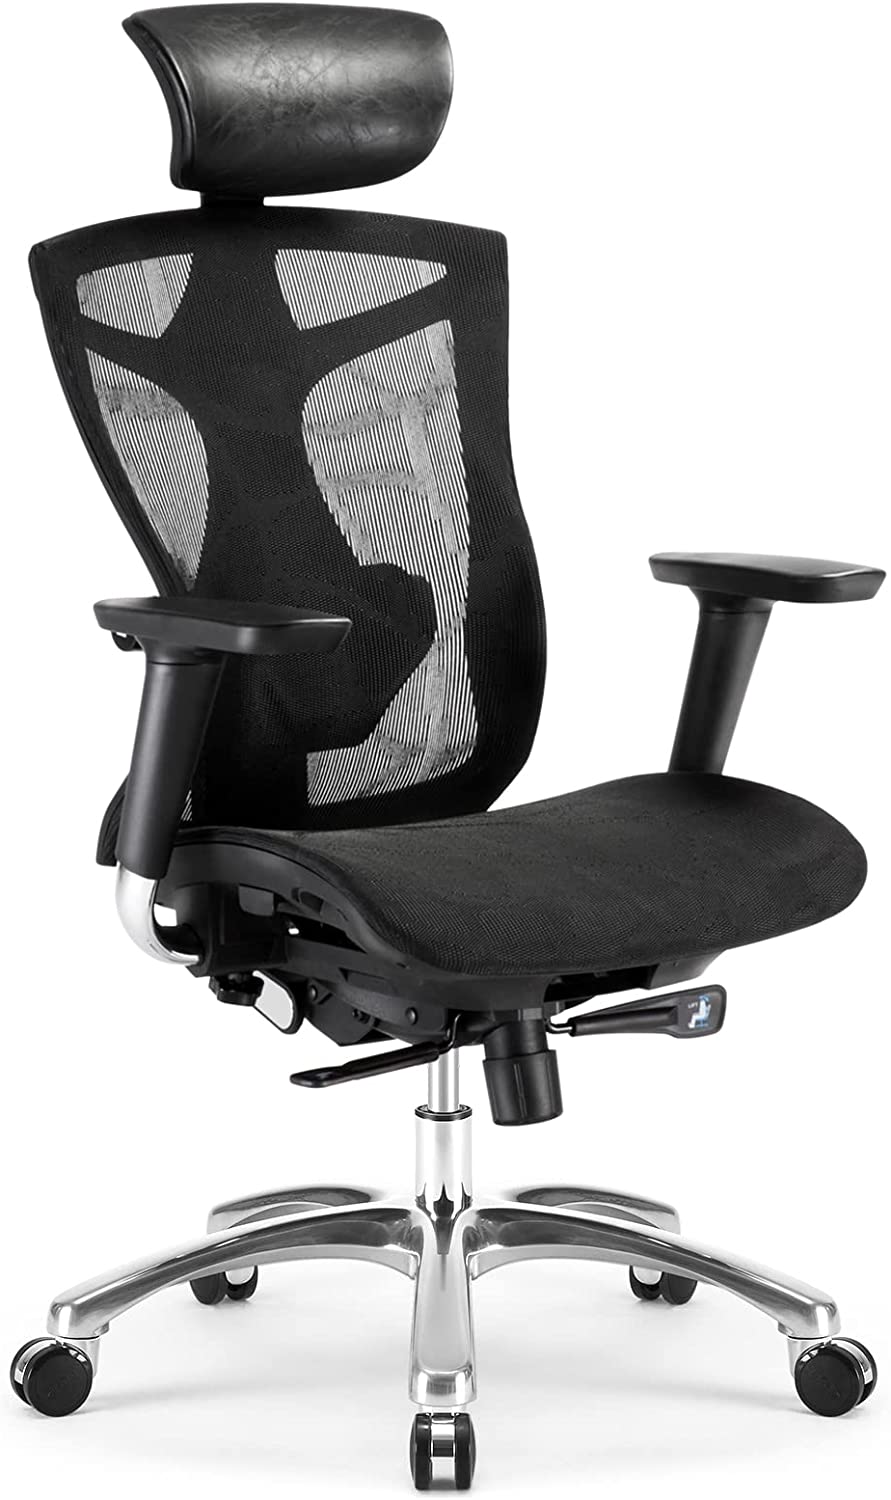 西昊SIHOO 人体工学办公椅带4D扶手等多档调节 黑色/灰色